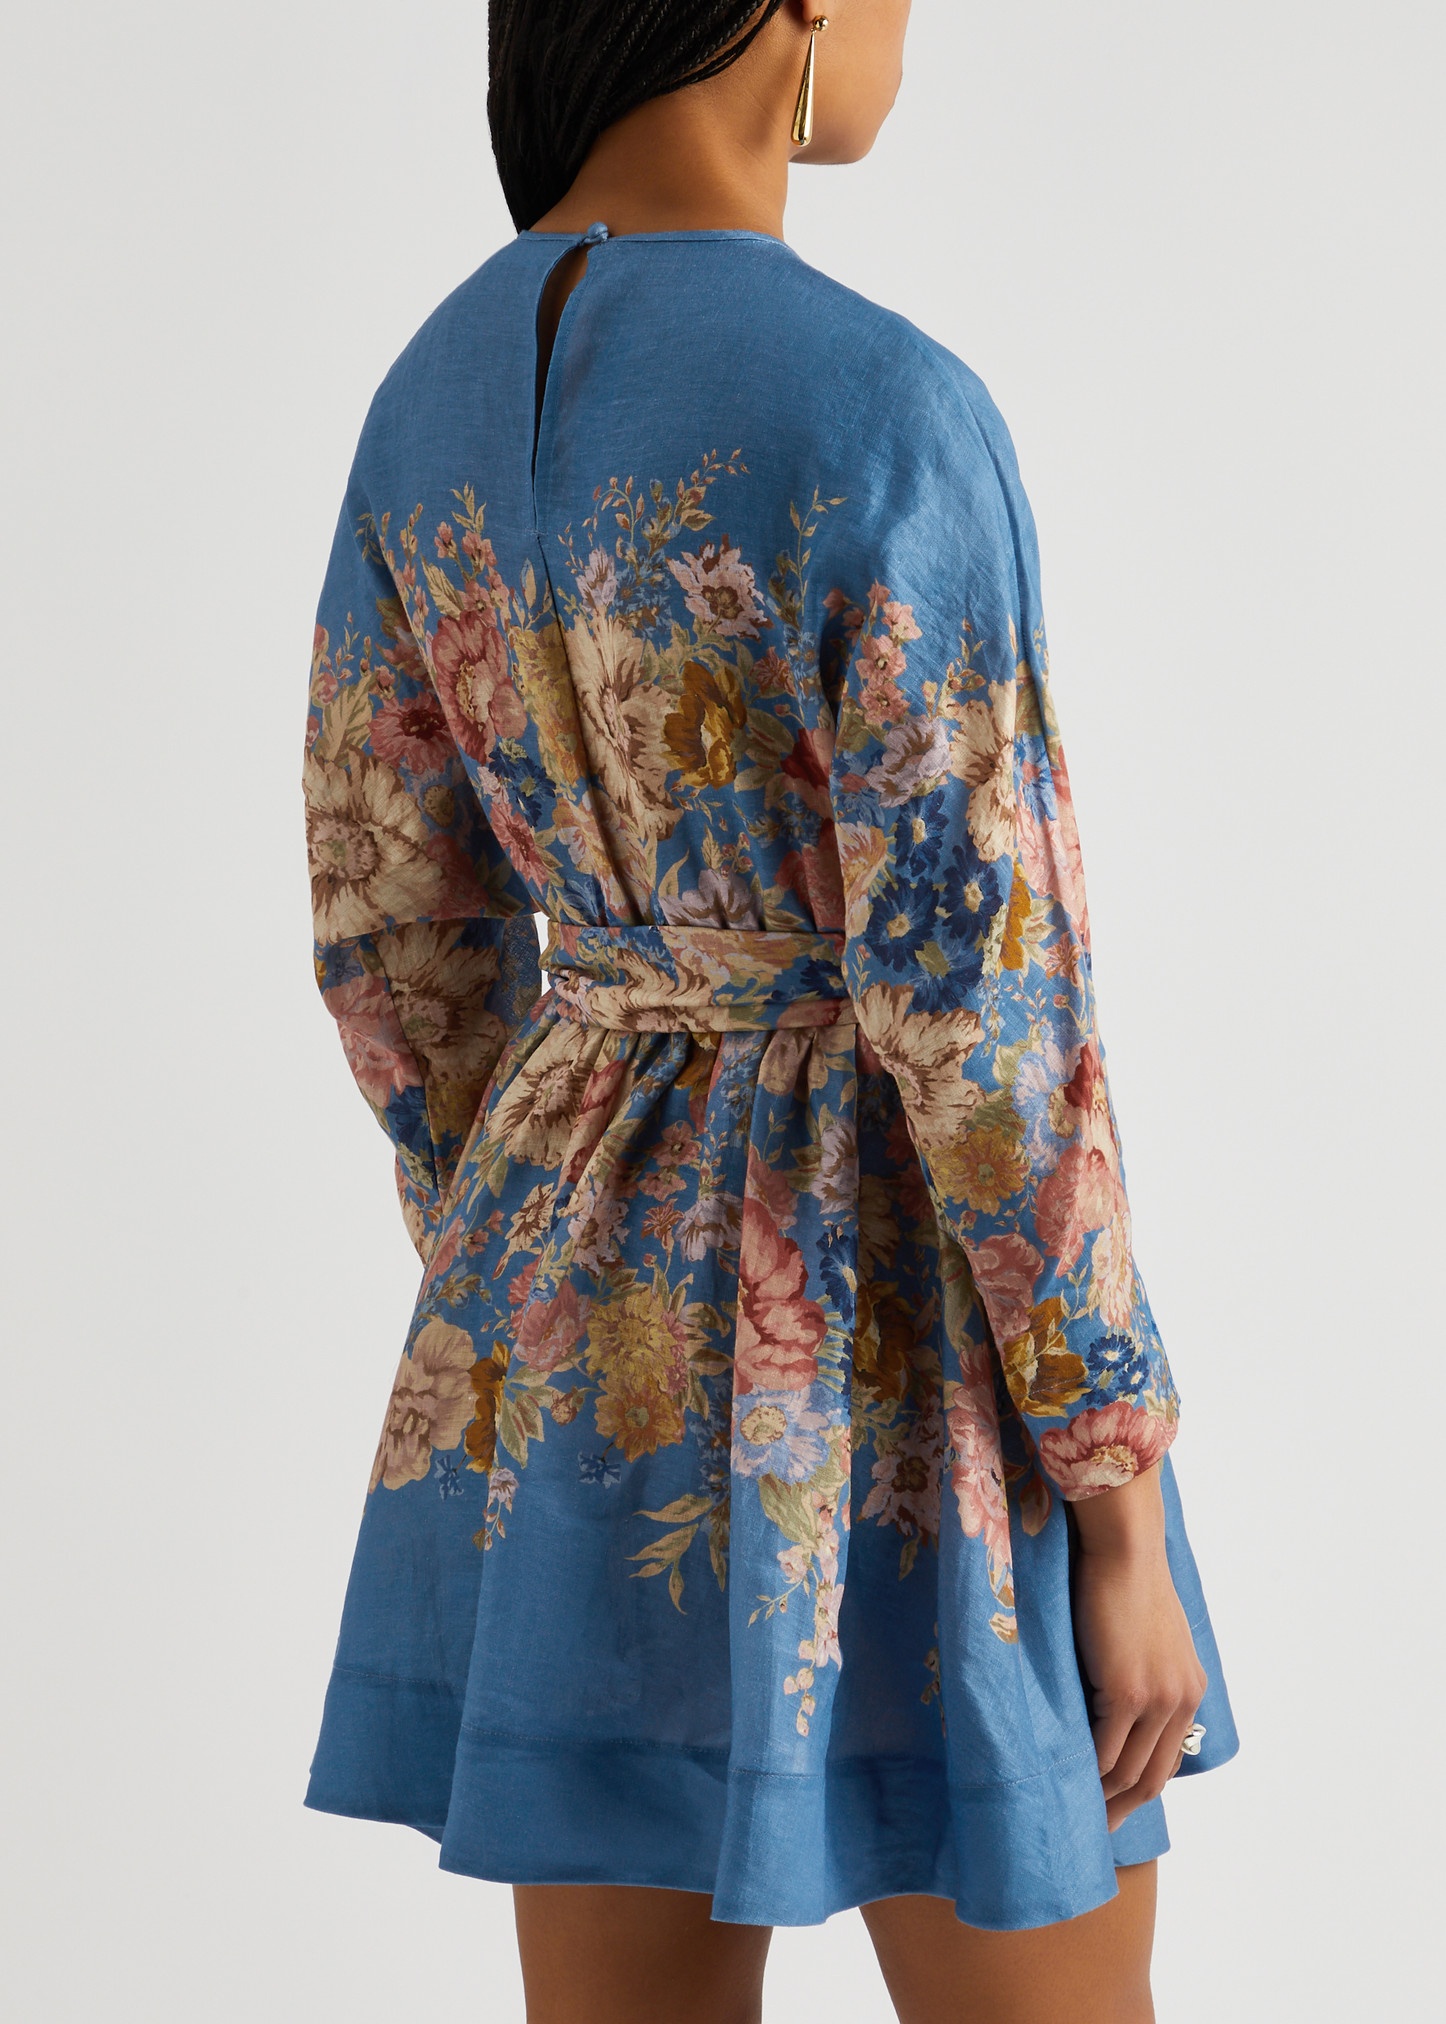 August floral-print linen mini dress - 3